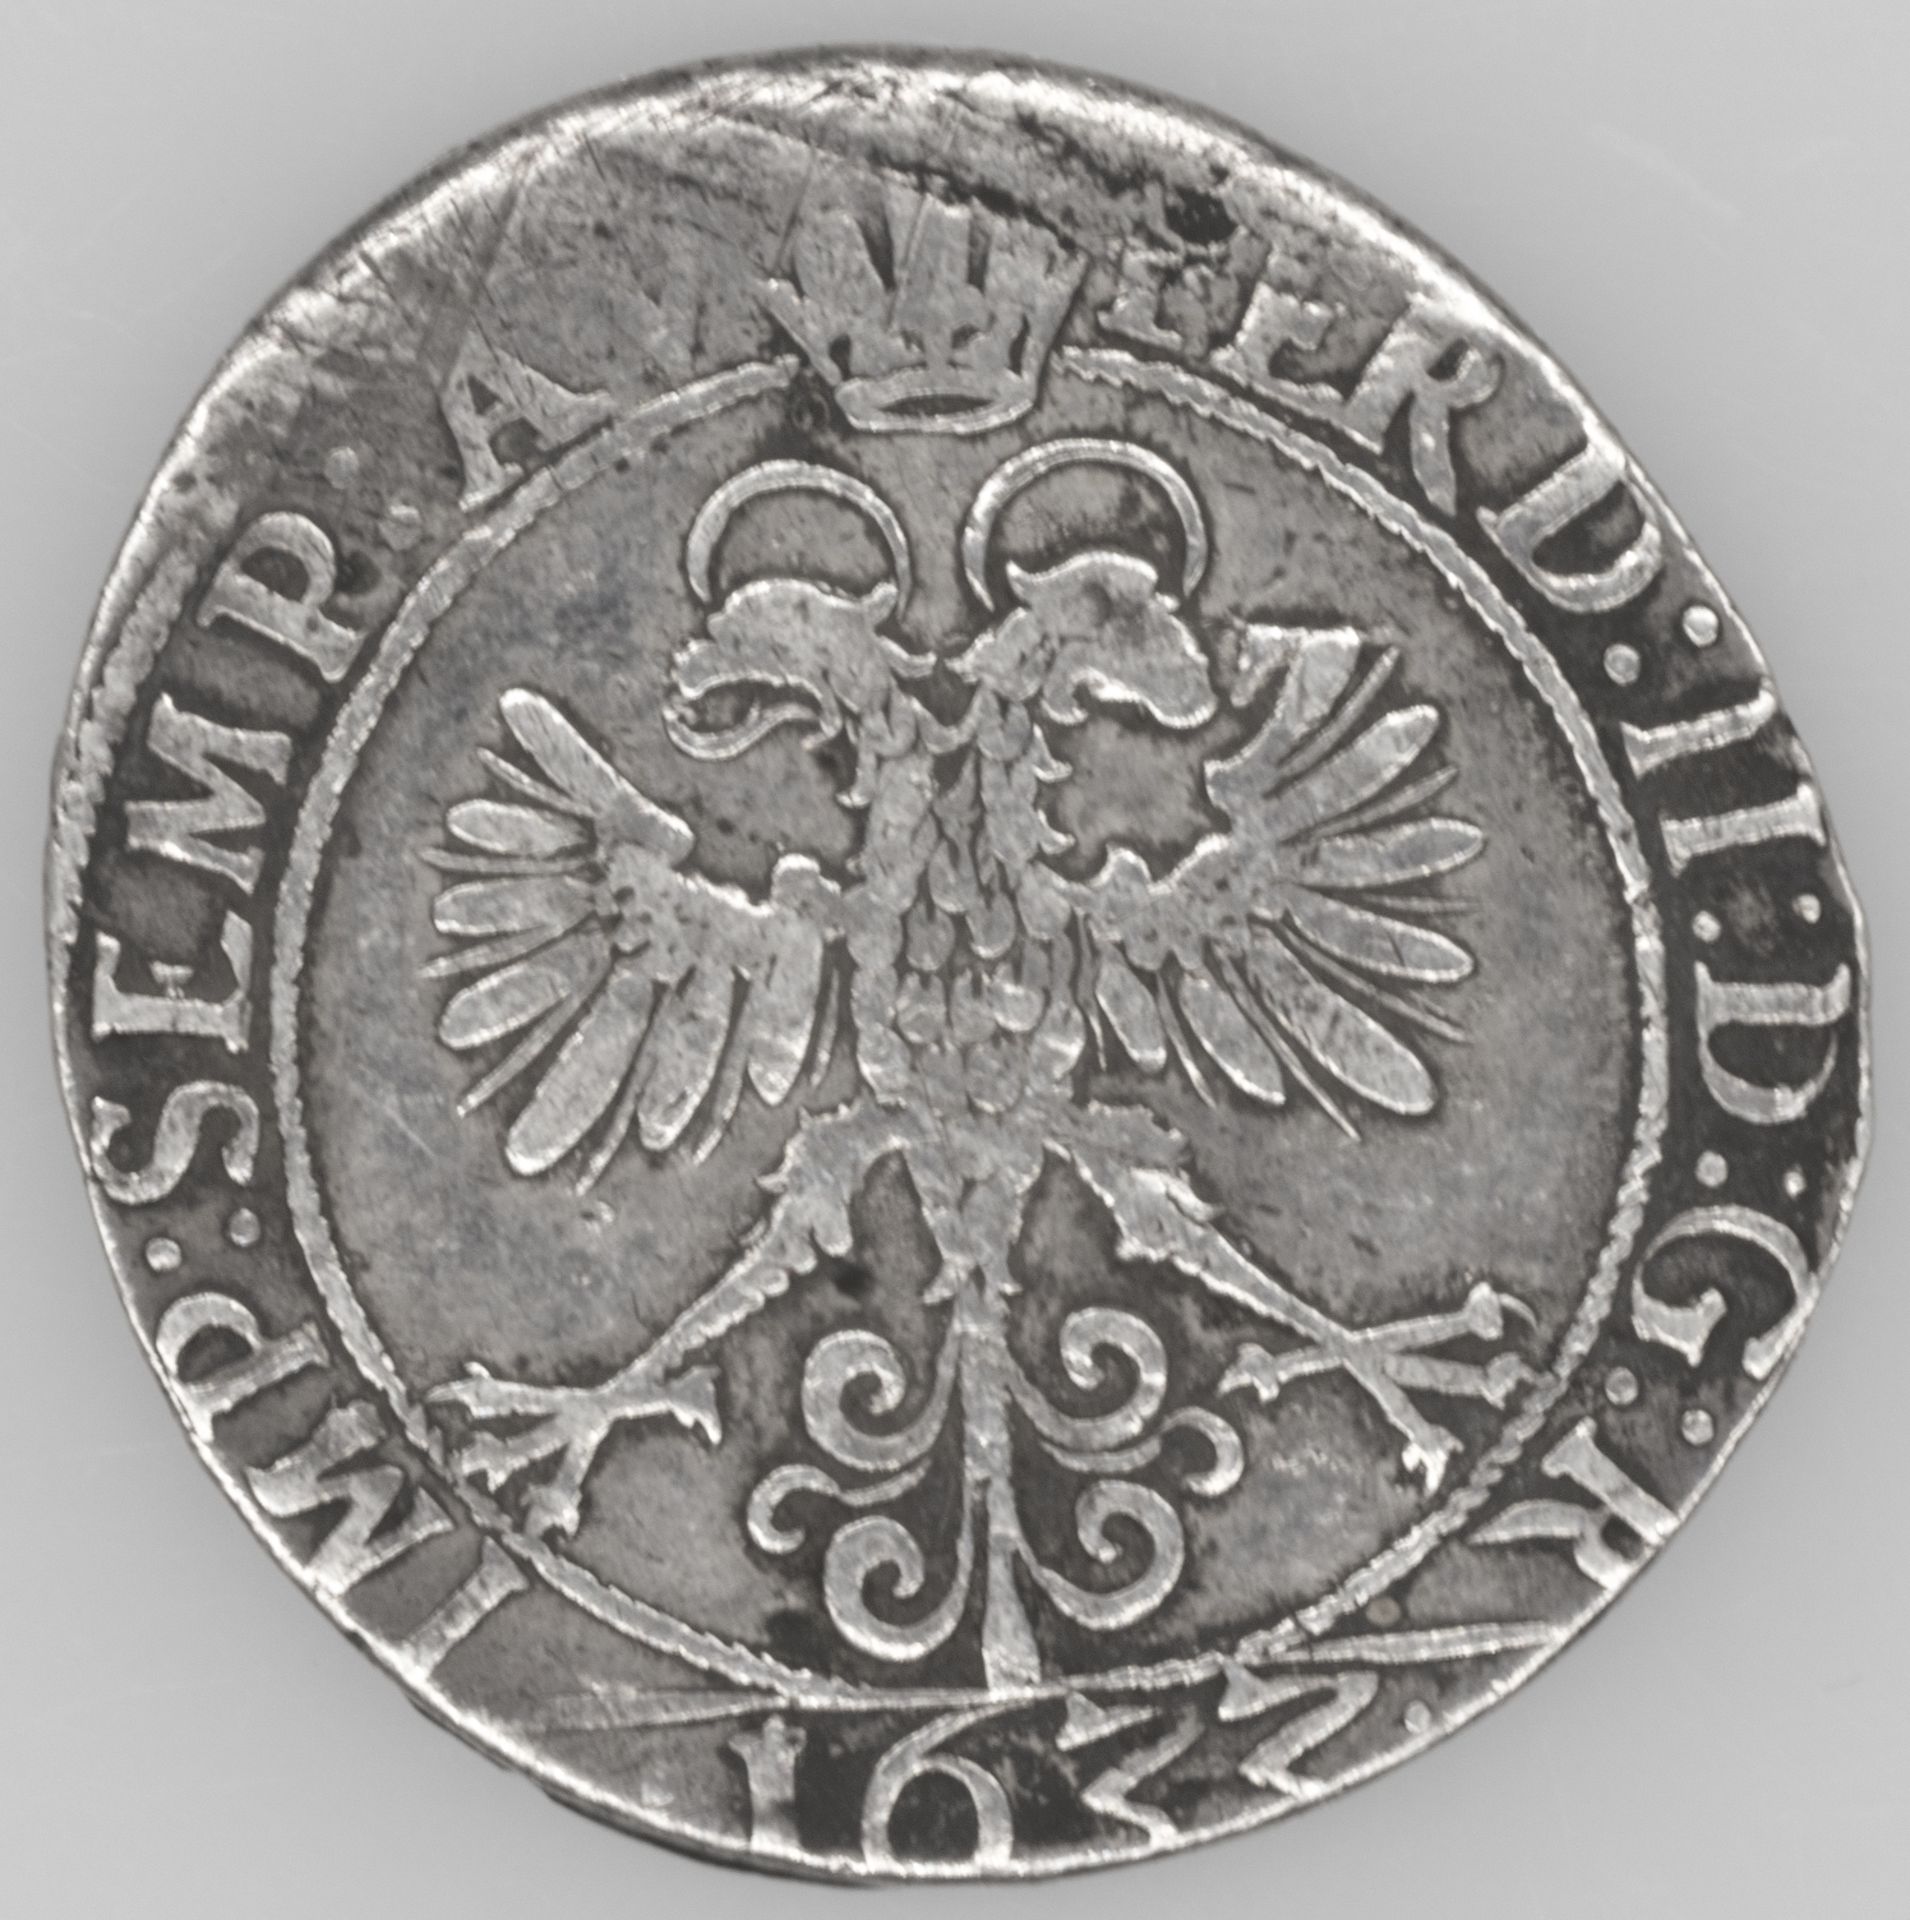 Stadt Konstanz 1633, Dicken zu 24 Kreuzer, Silber. NAU - Nr. 224. Erhaltung: ss. - Bild 2 aus 2